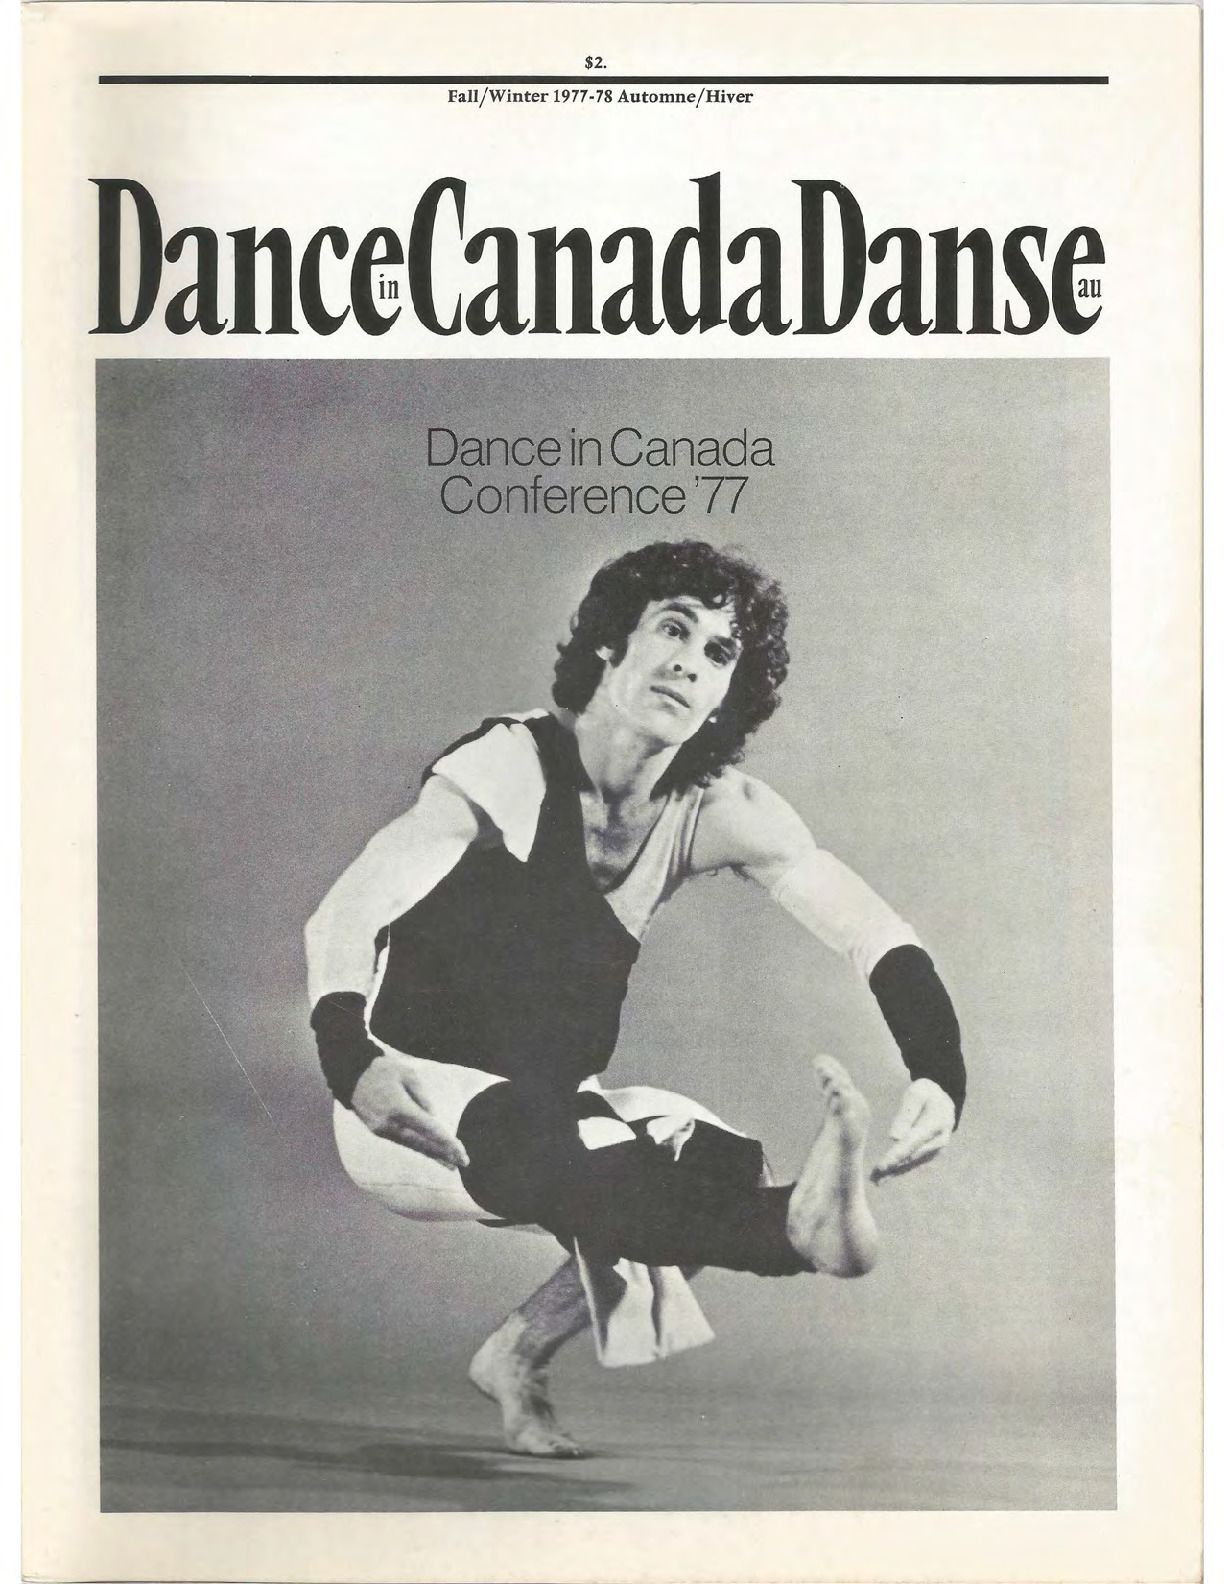 Dance in Canada Magazine No 14 Fall-Winter 1977-78 compressed.pdf